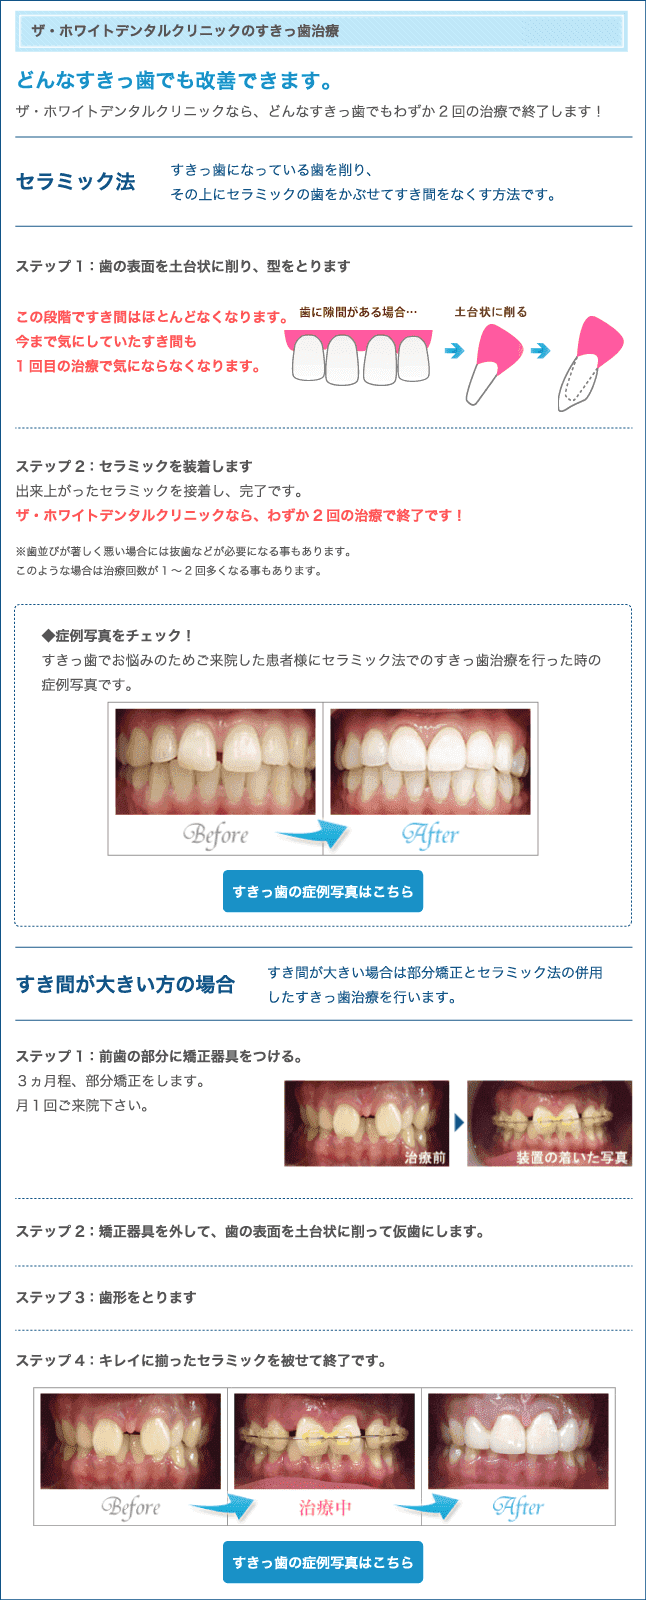 すきっ歯治療